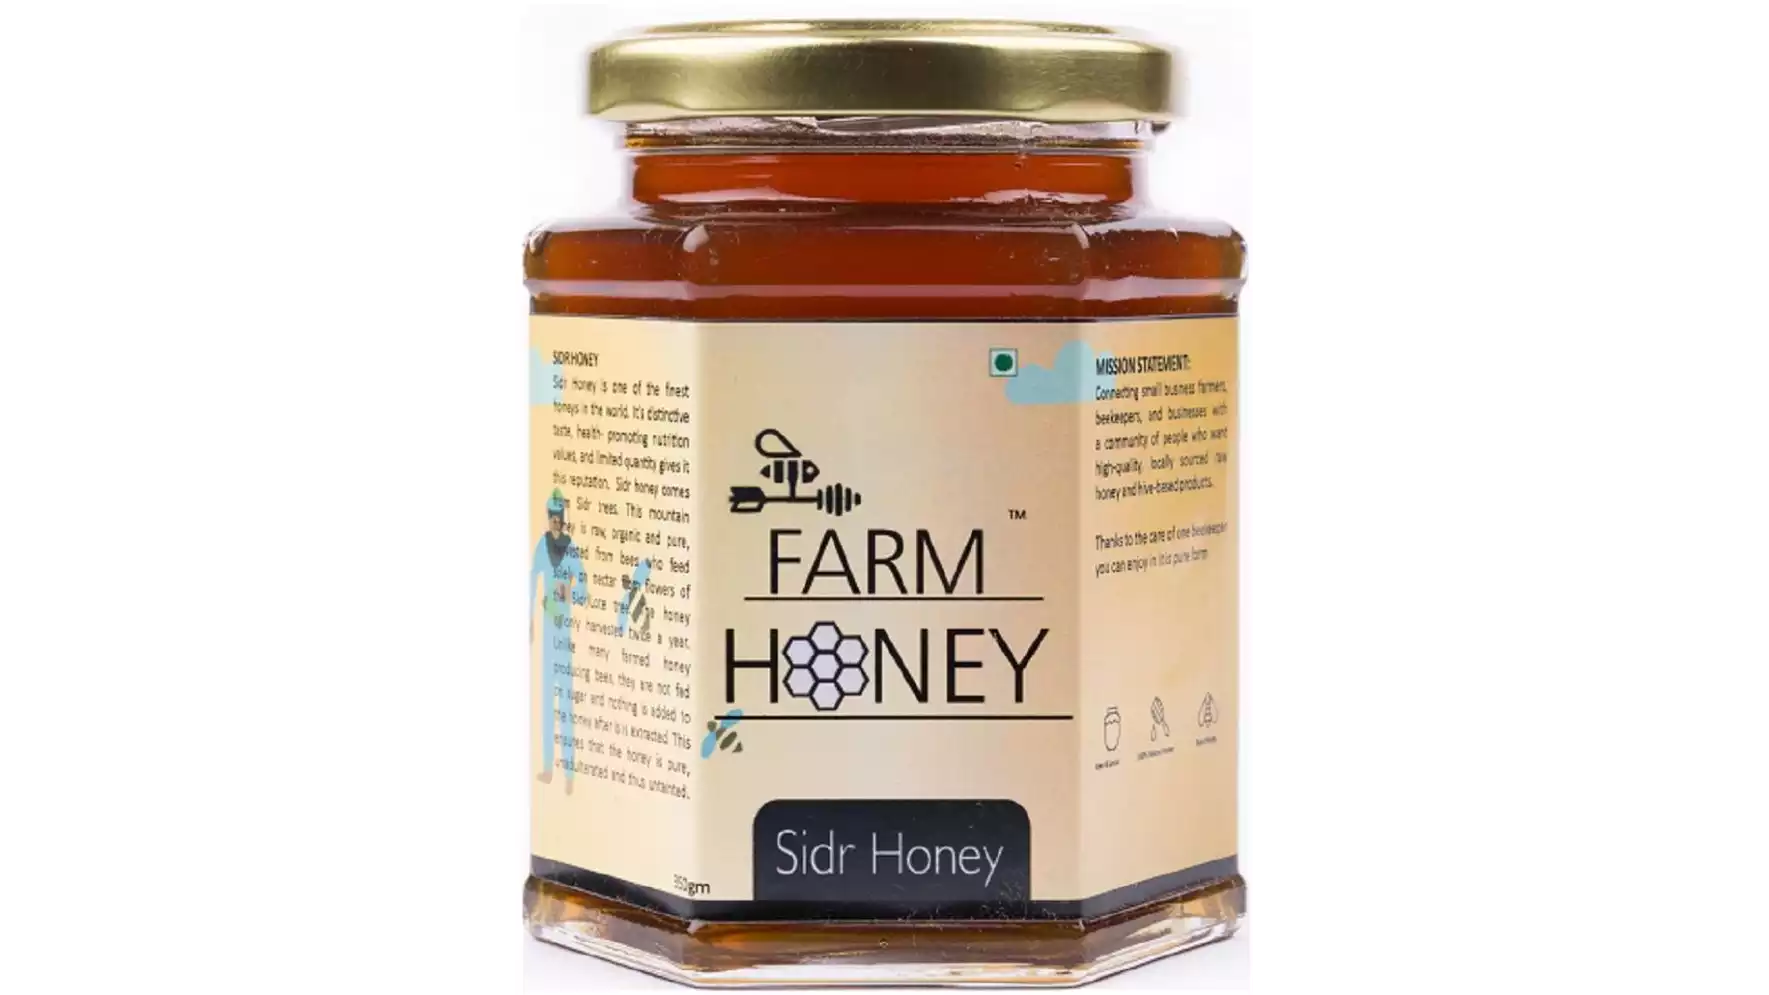 Farm Honey Sidr Honey (350g)